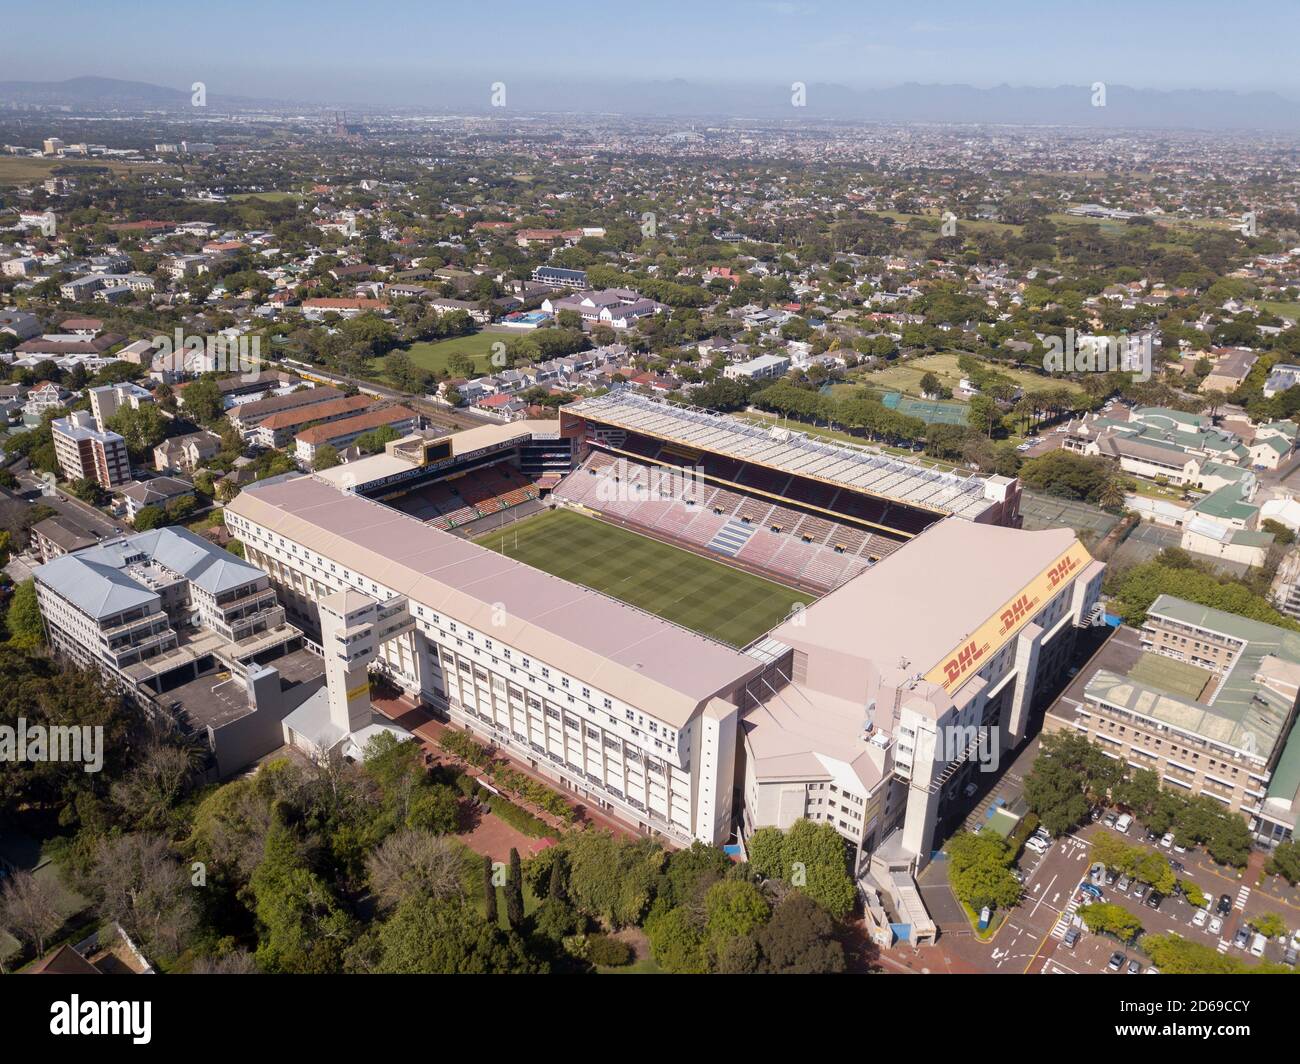 15 octobre 2020 - Cape Town, Afrique du Sud : stade de rugby de Newlands à Cape Town, Afrique du Sud Banque D'Images